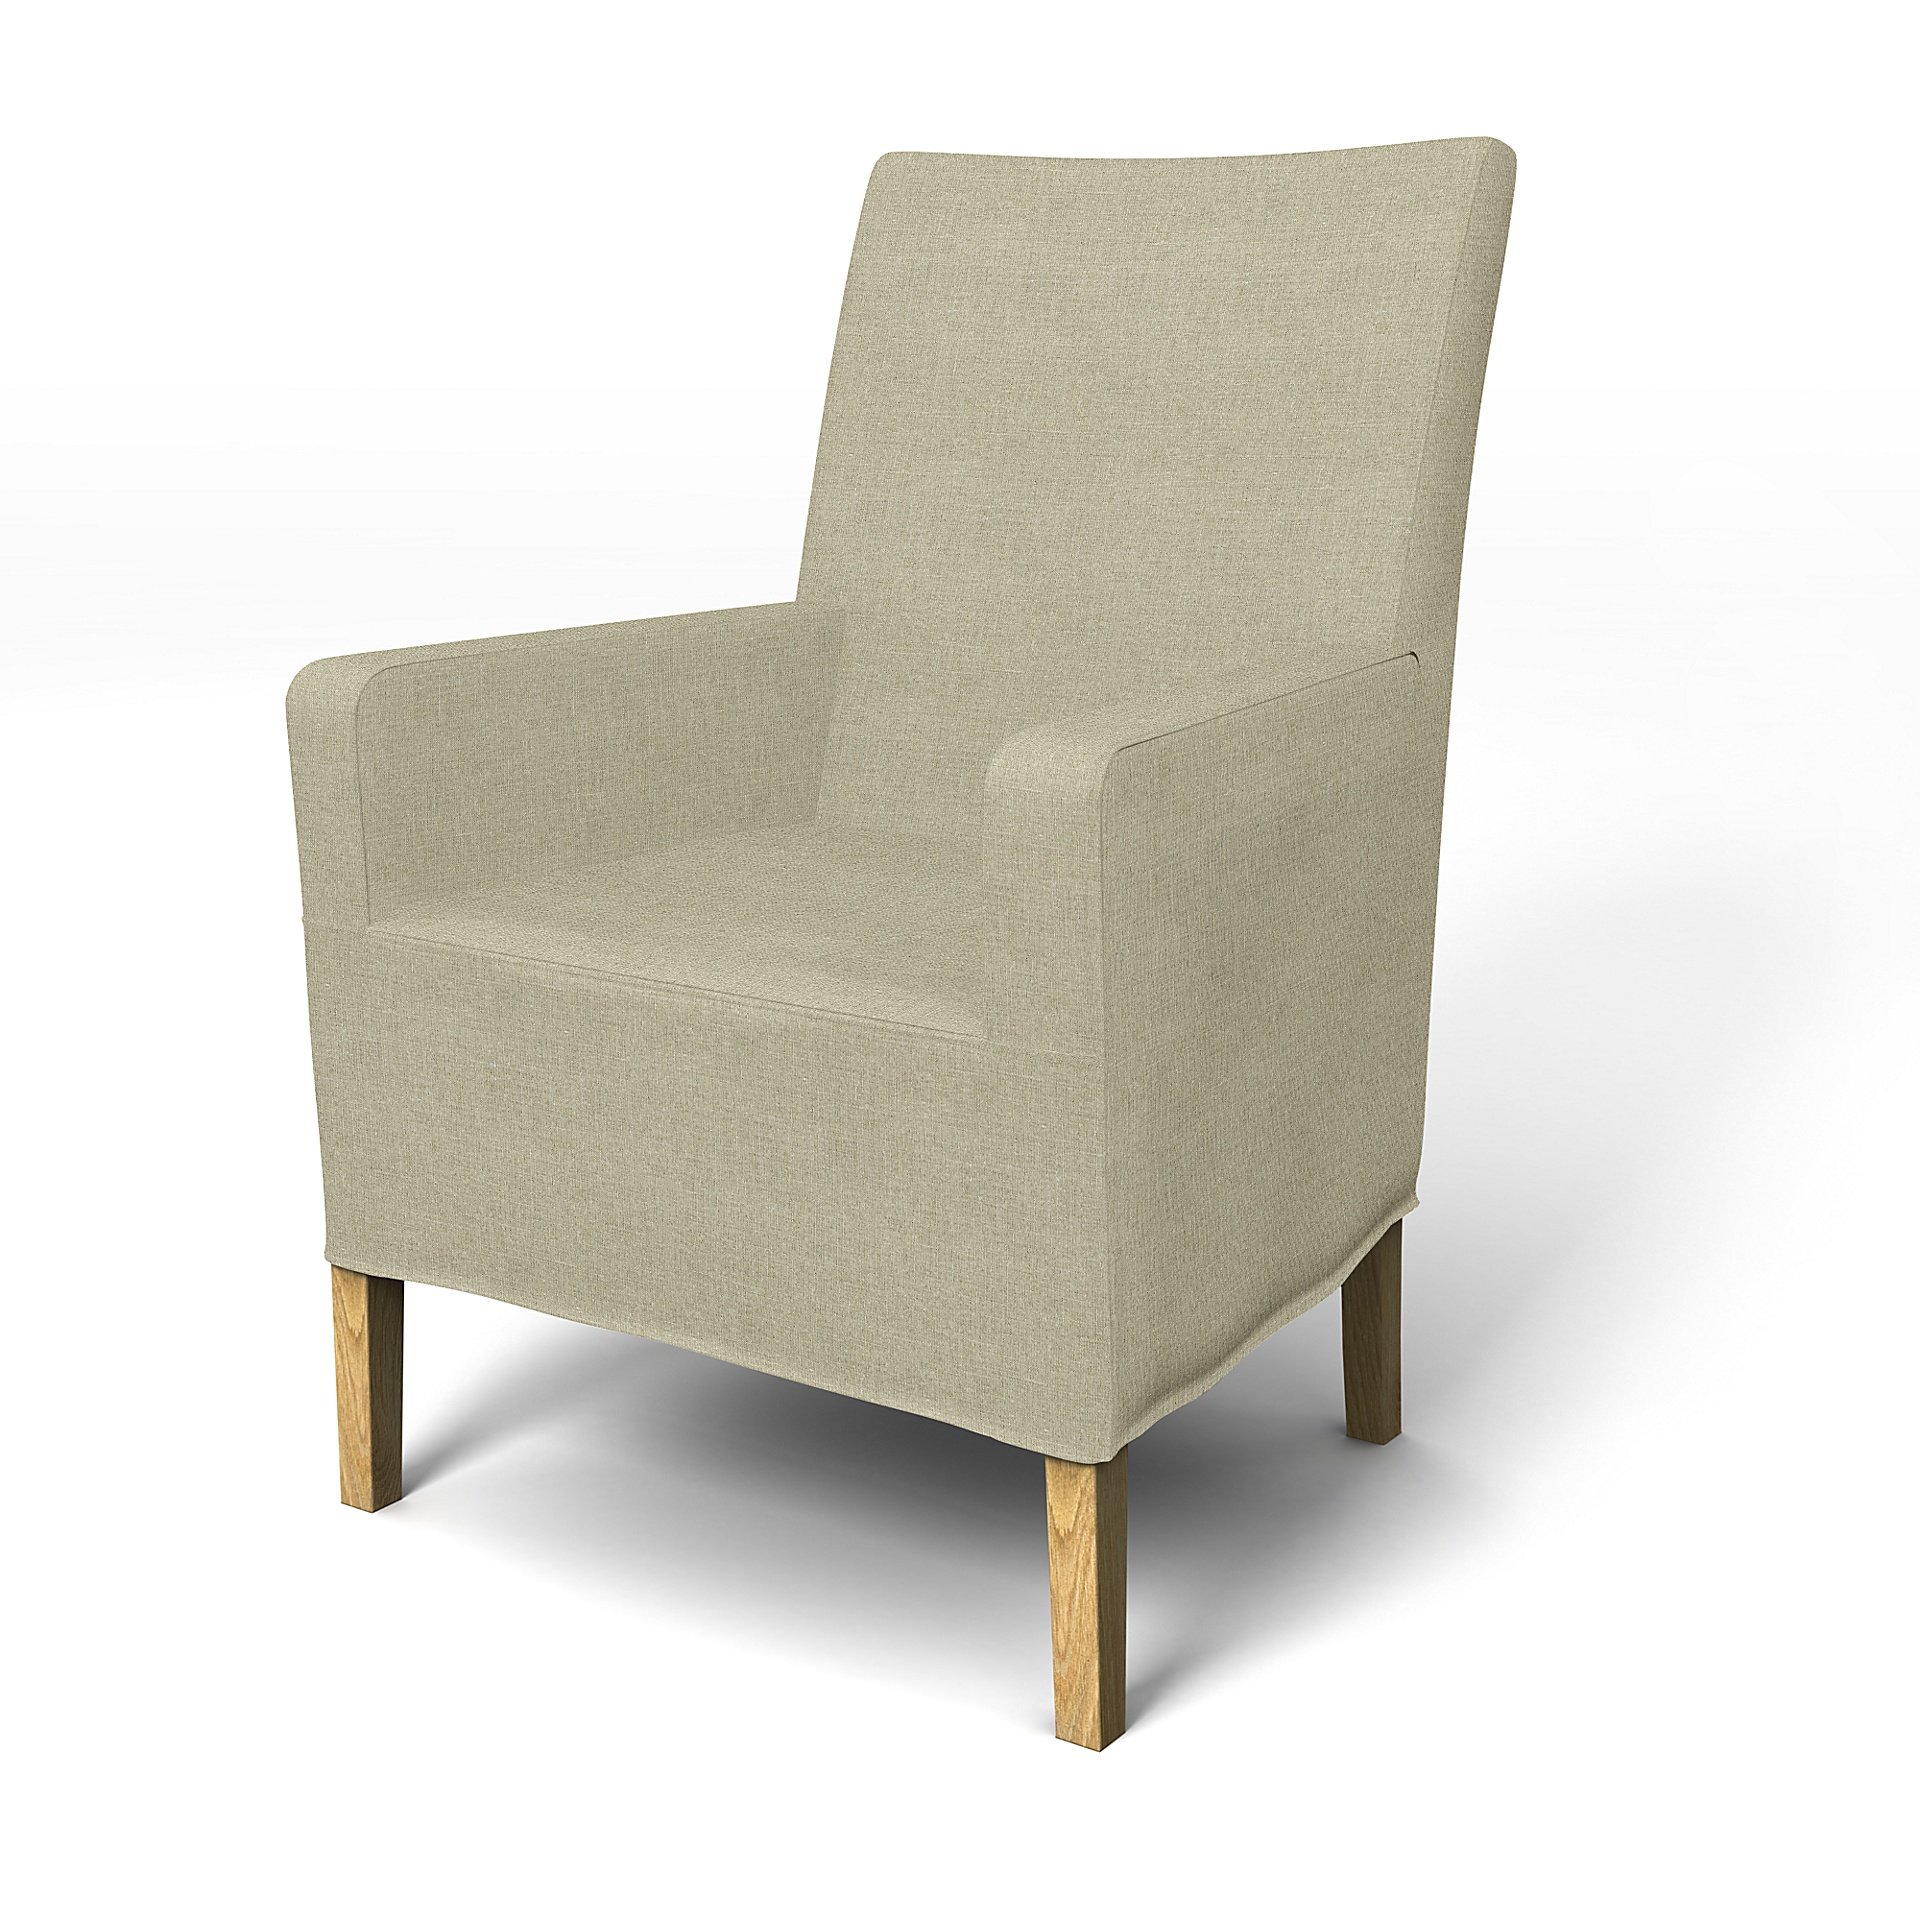 IKEA - Henriksdal, Chair cover w/ armrest, medium length skirt, Pebble, Linen - Bemz